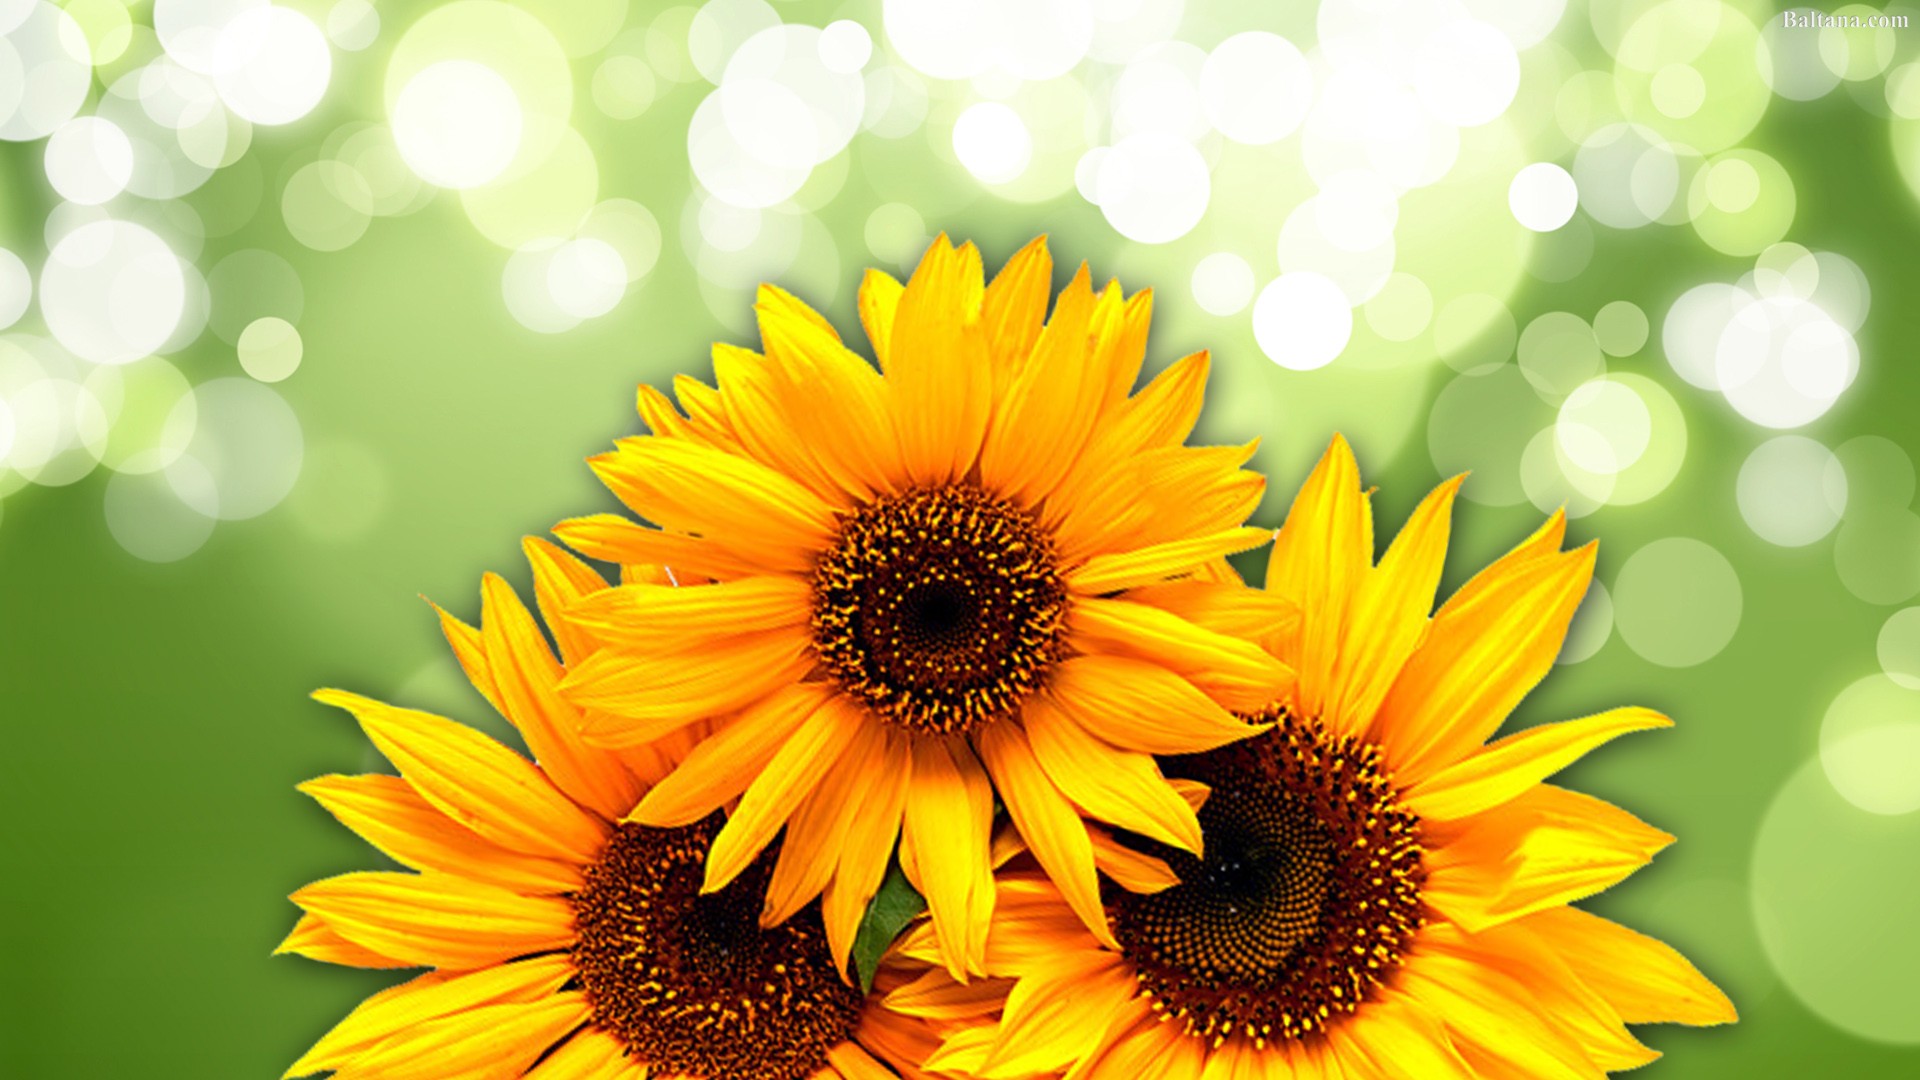 Sunflower Wallpaper - Green Bokeh - HD Wallpaper 